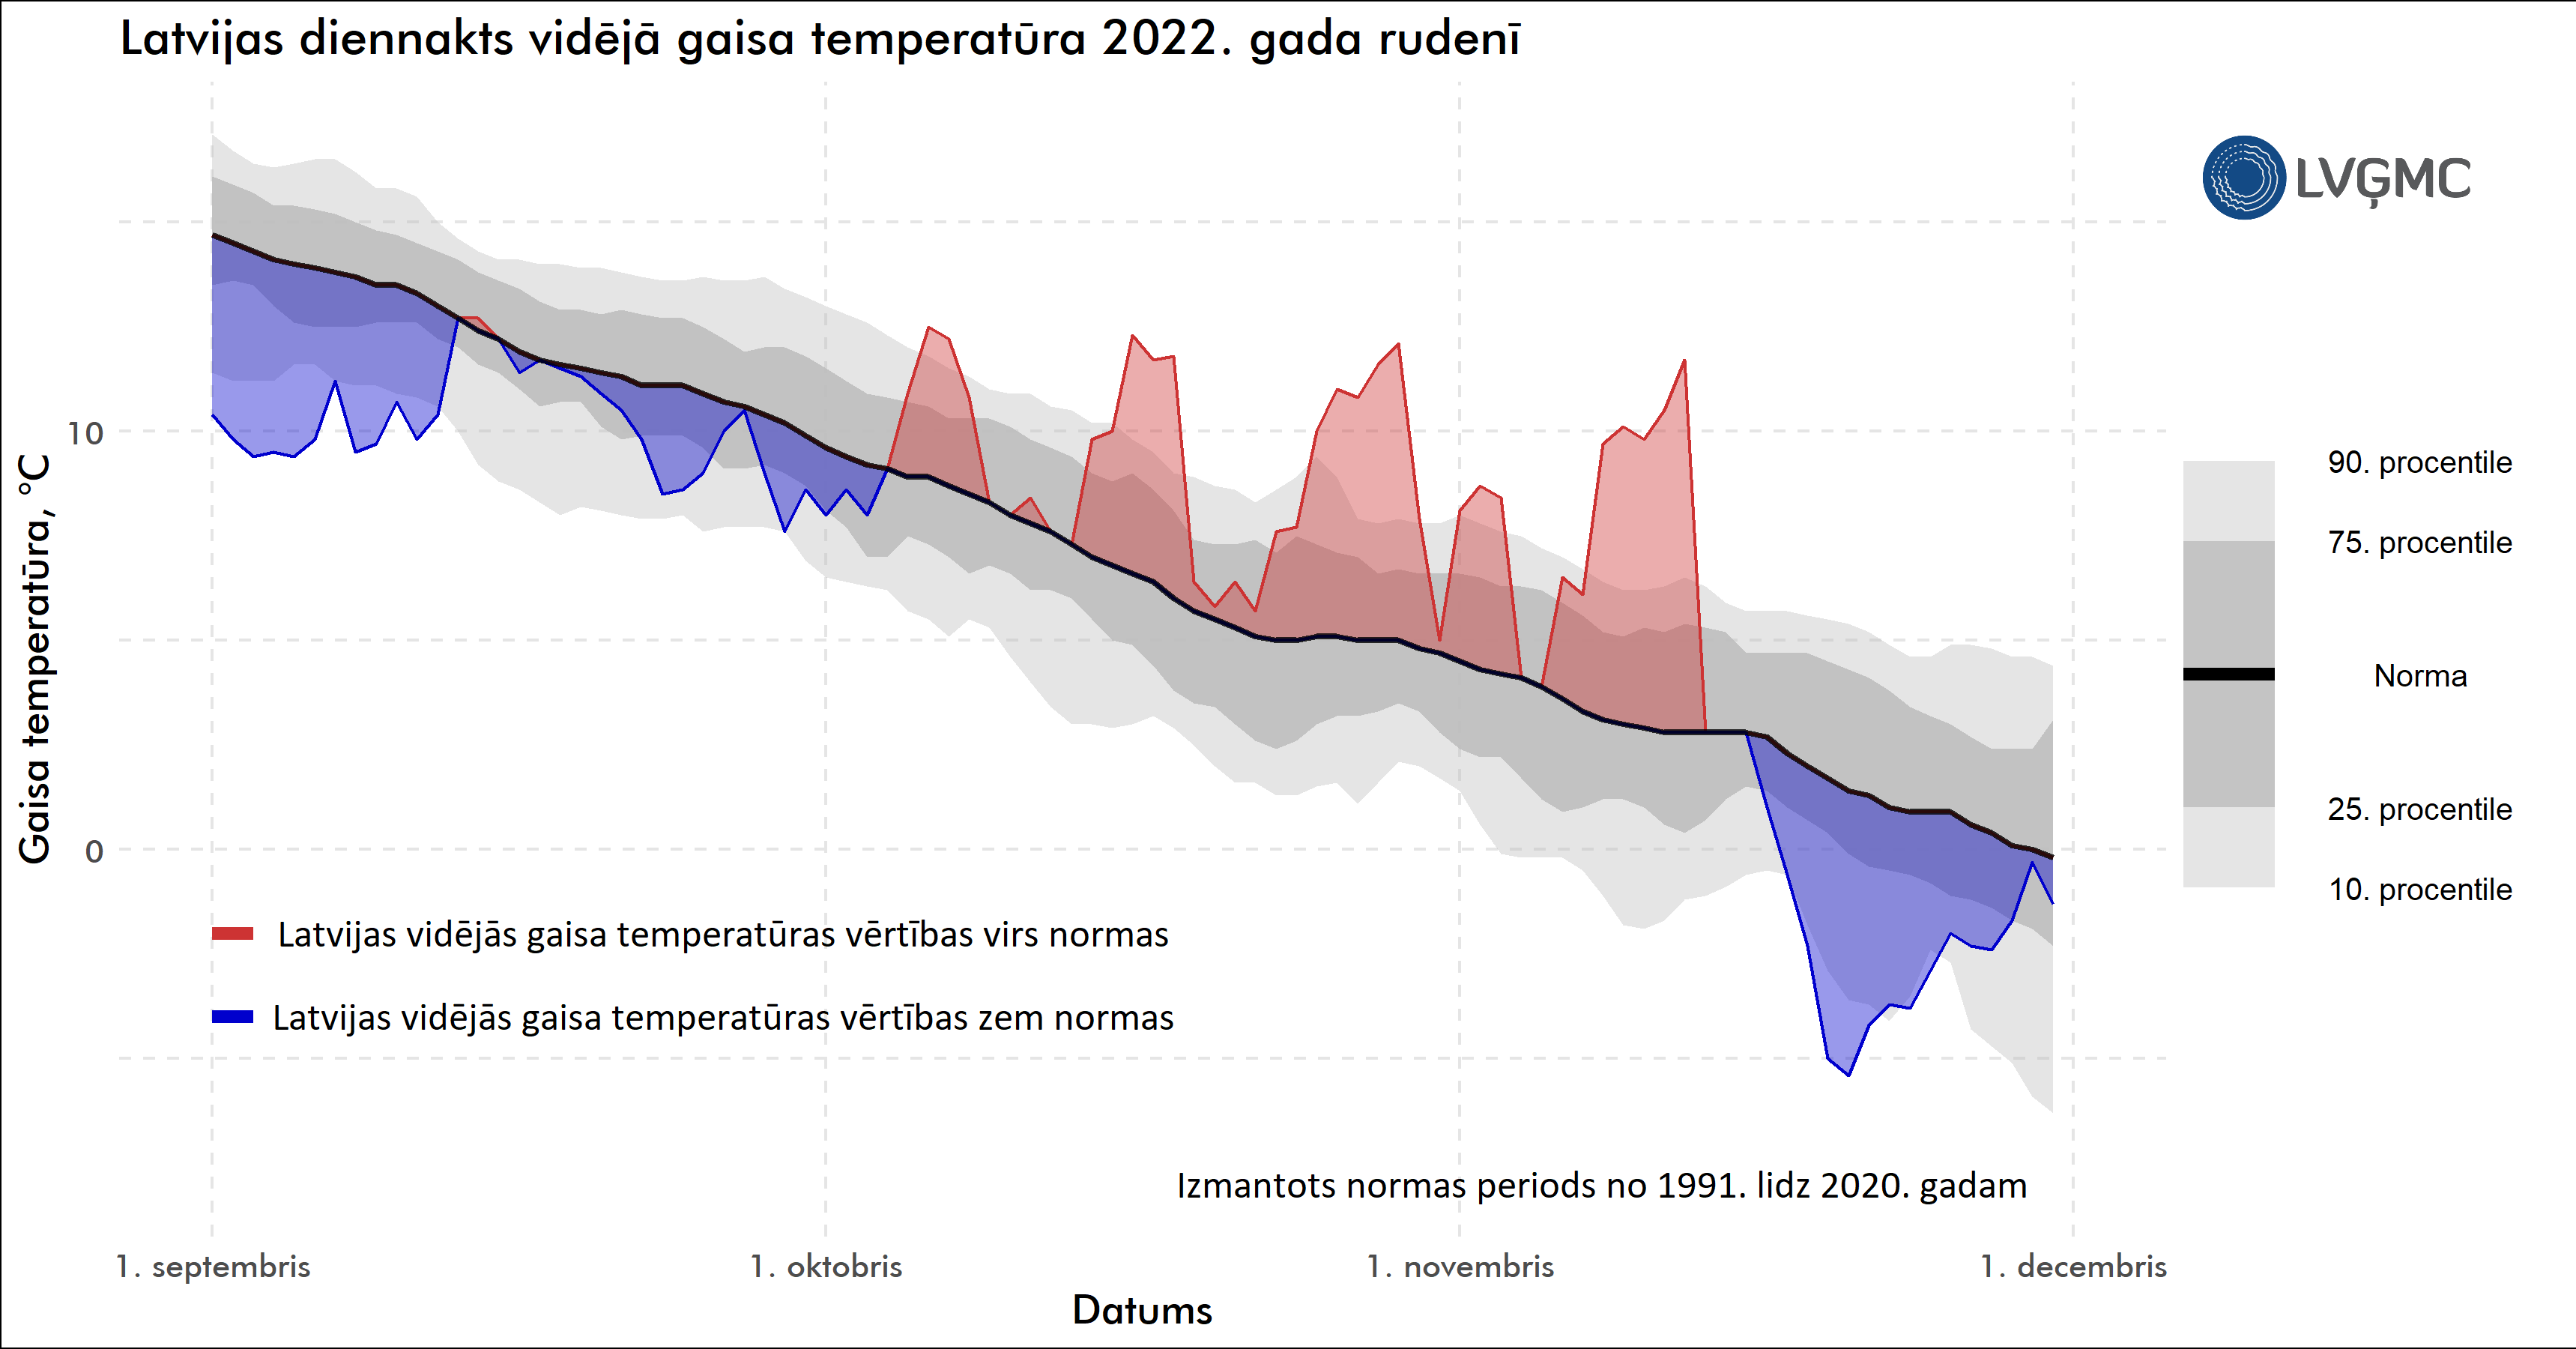 Latvijas diennakts vidējā gaisa temperatūra 2022. gadā